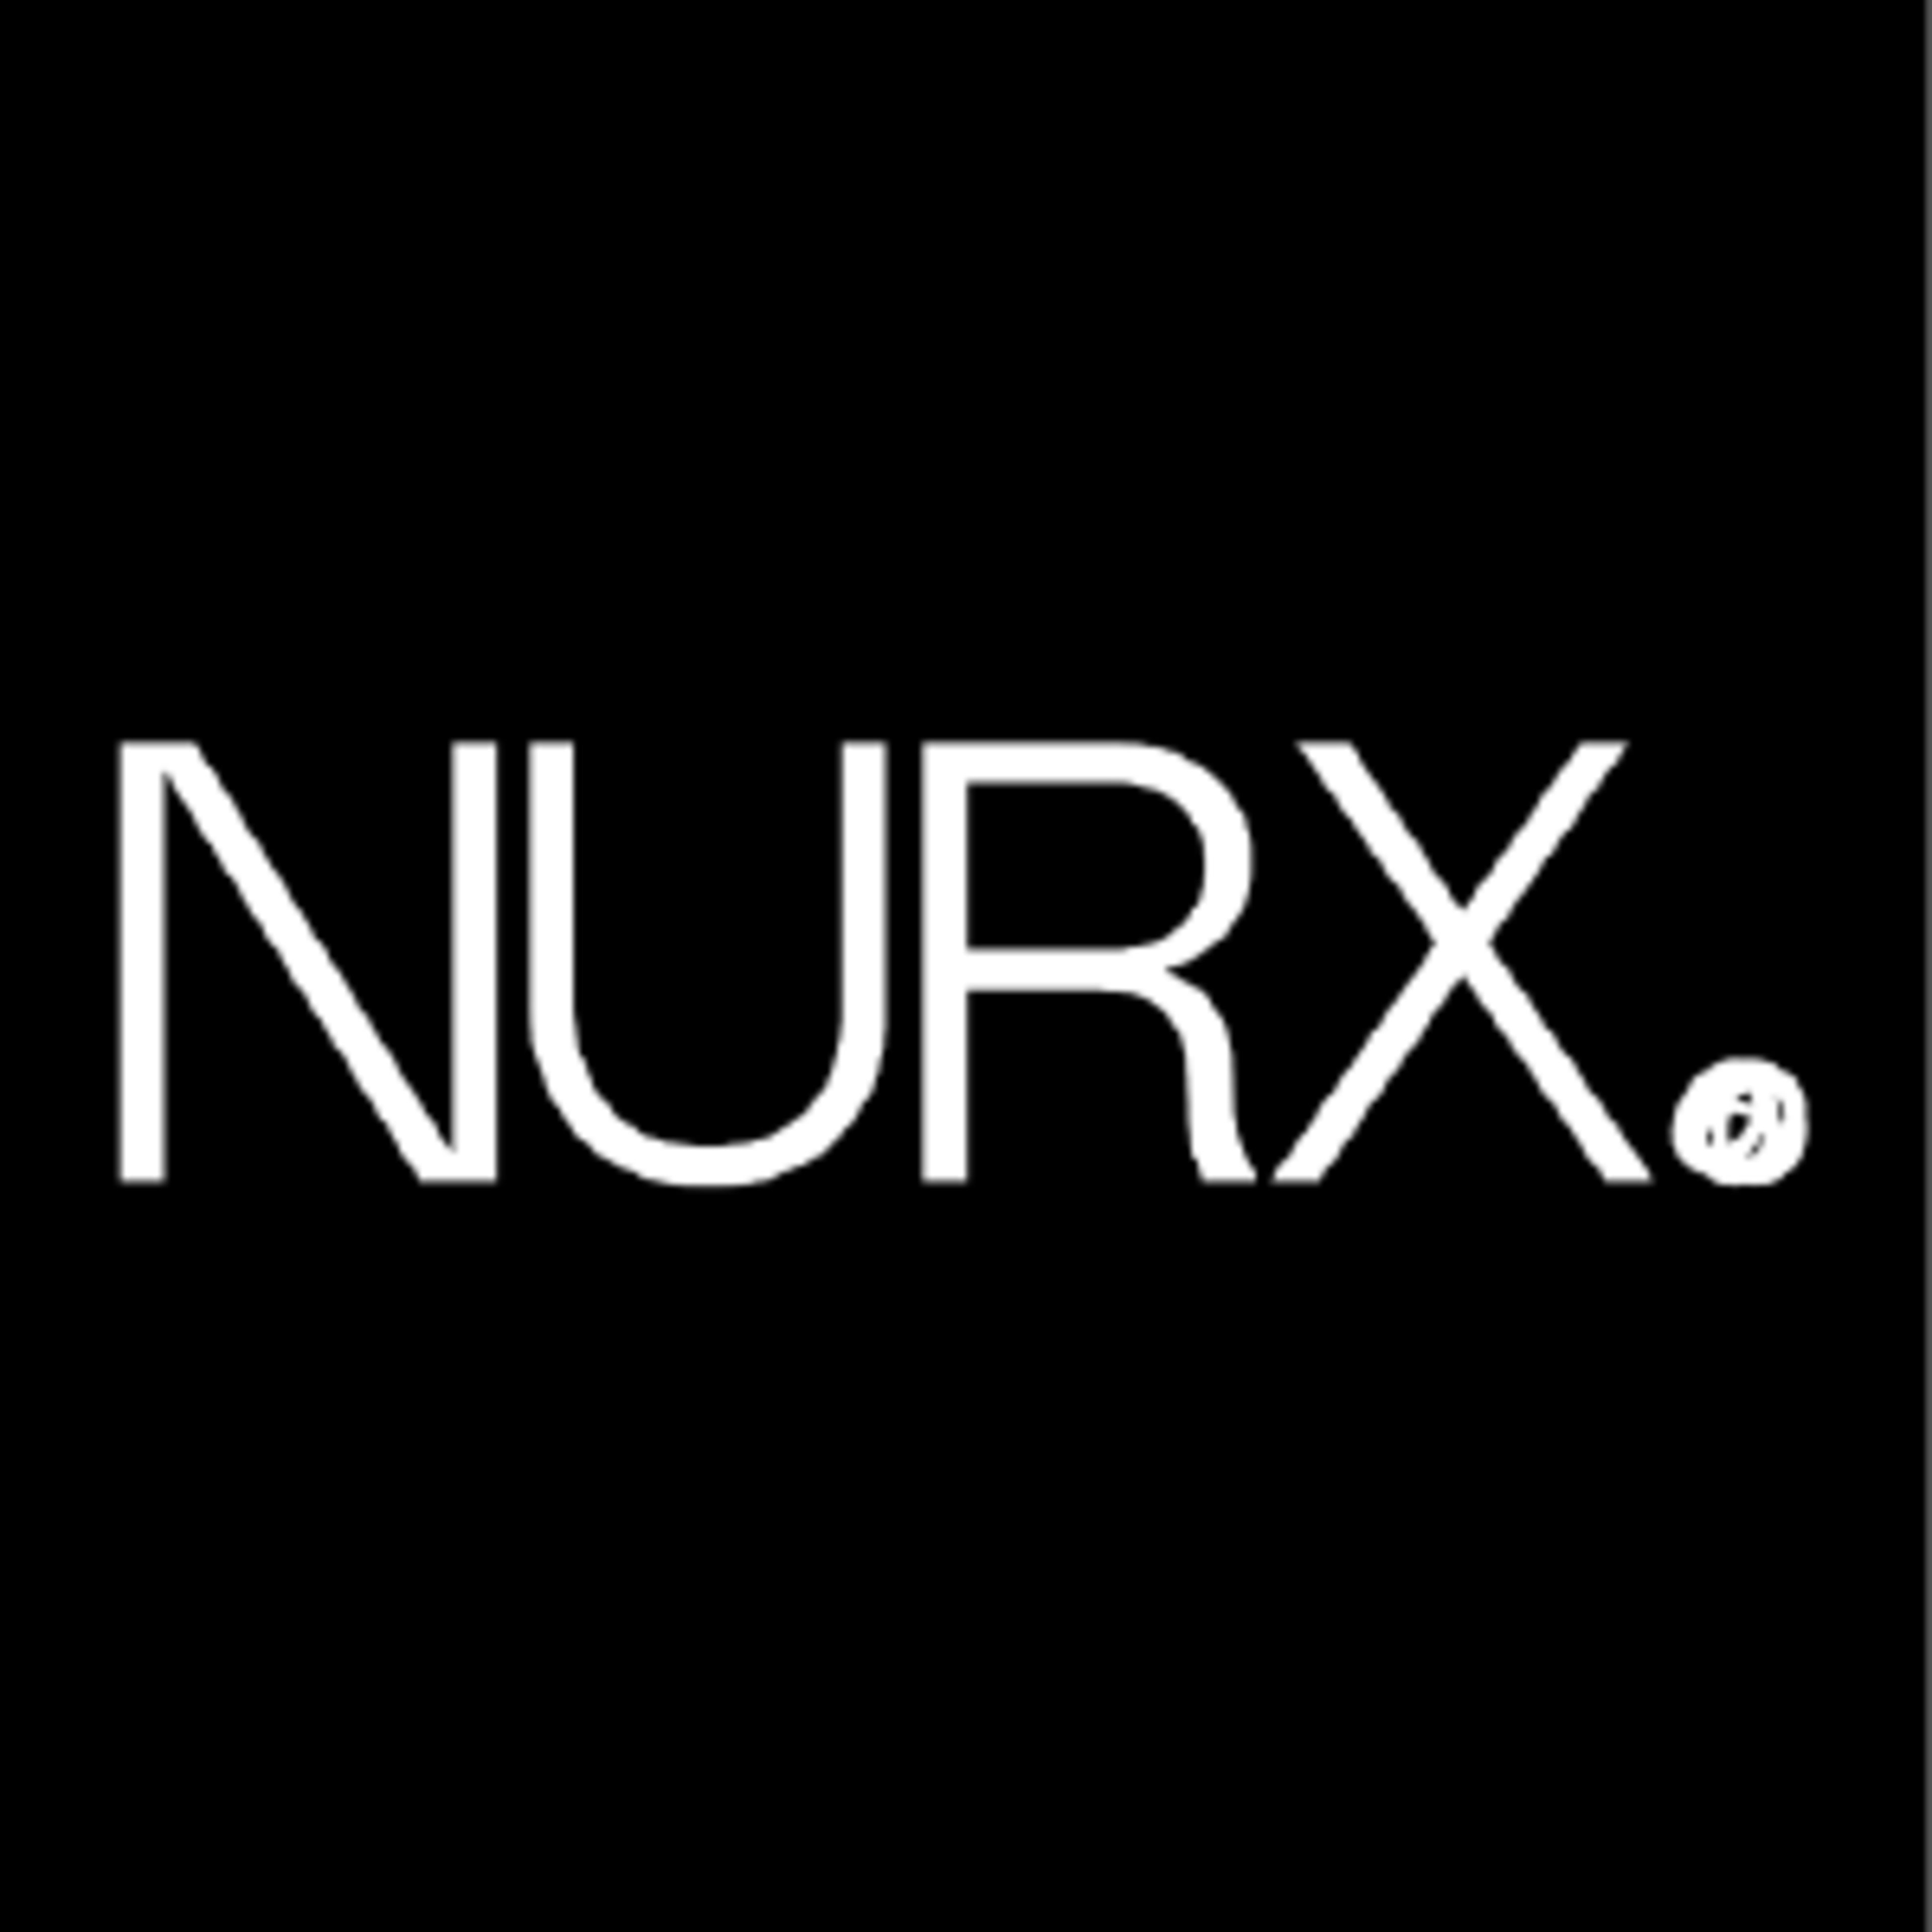 Nurx Code